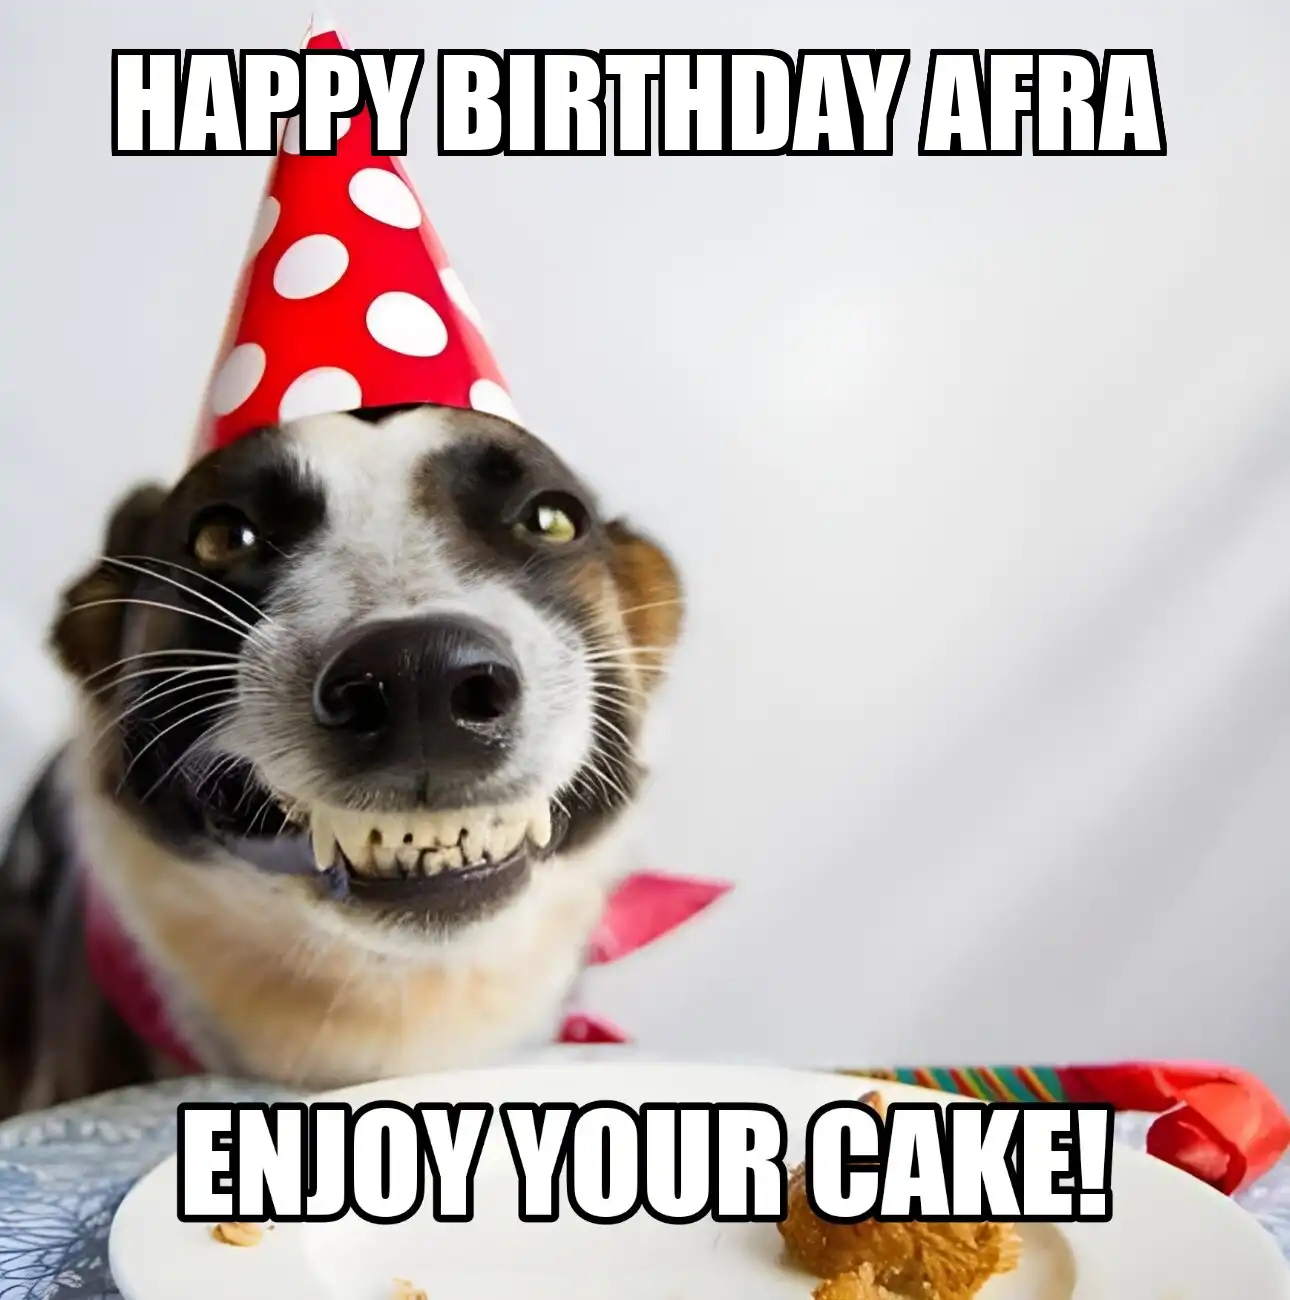 Happy Birthday Afra Enjoy Your Cake Dog Meme